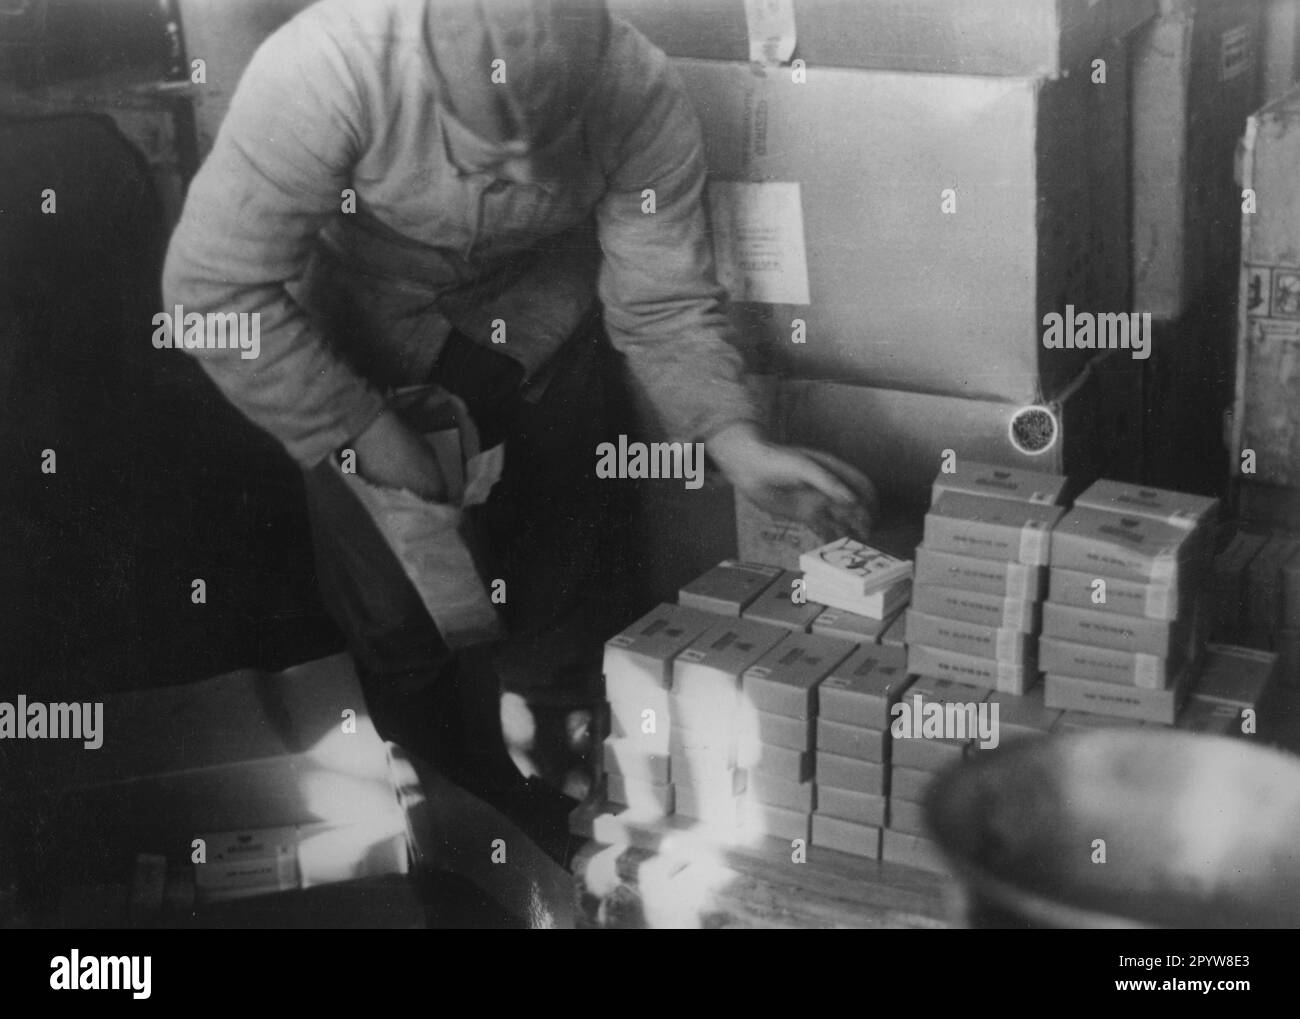 Un soldat en costume de forage trie les paquets de cigarettes dans un dépôt d'approvisionnement près de Krasnograd près de Kharkov (Kharkiv). Photo: Kintscher [traduction automatique] Banque D'Images